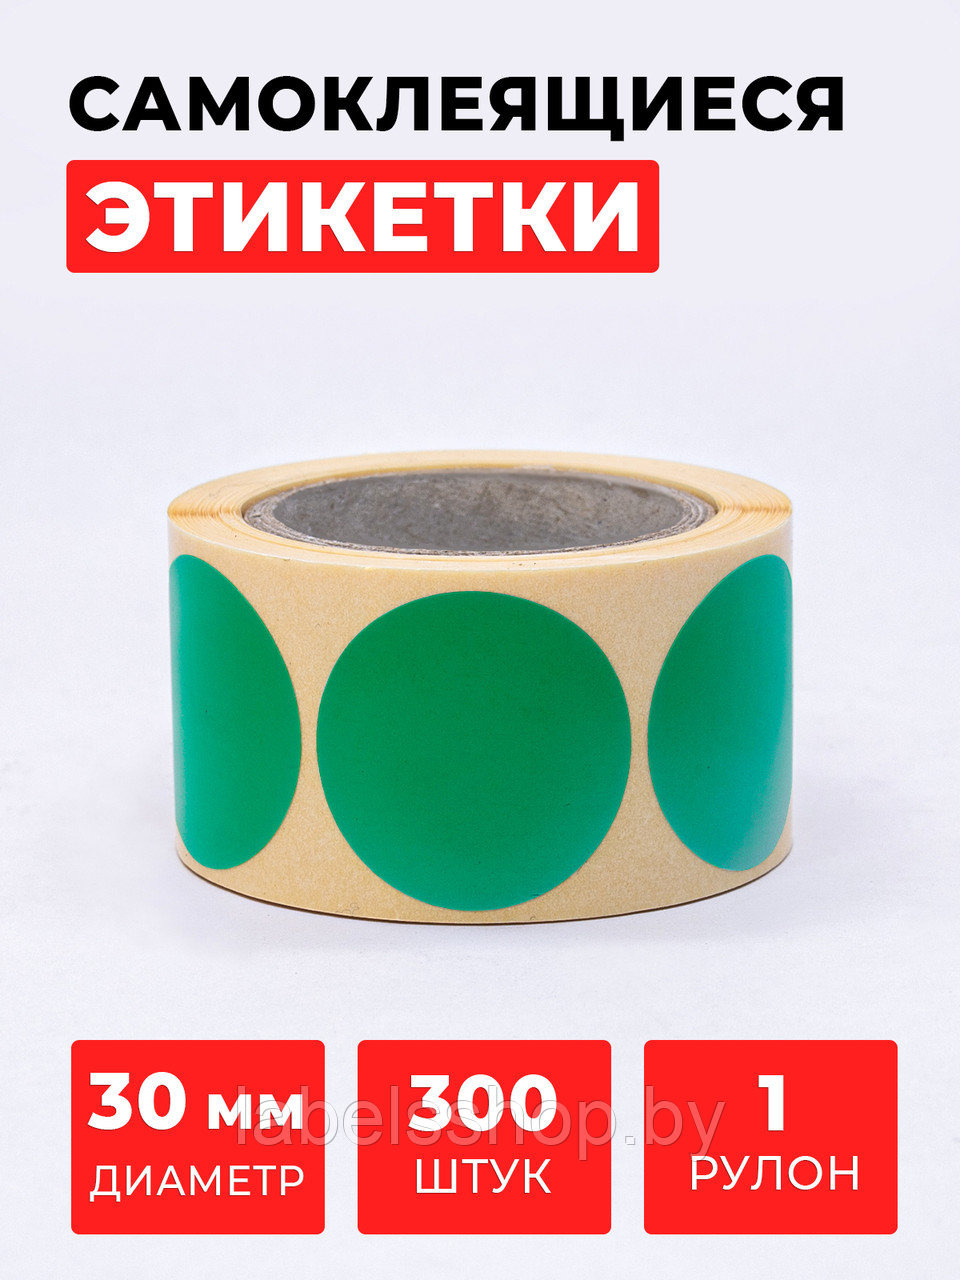 Круглые самоклеящиеся наклейки / этикетки в виде круга (D 30 мм), цвет зеленый, 300 шт в ролике.